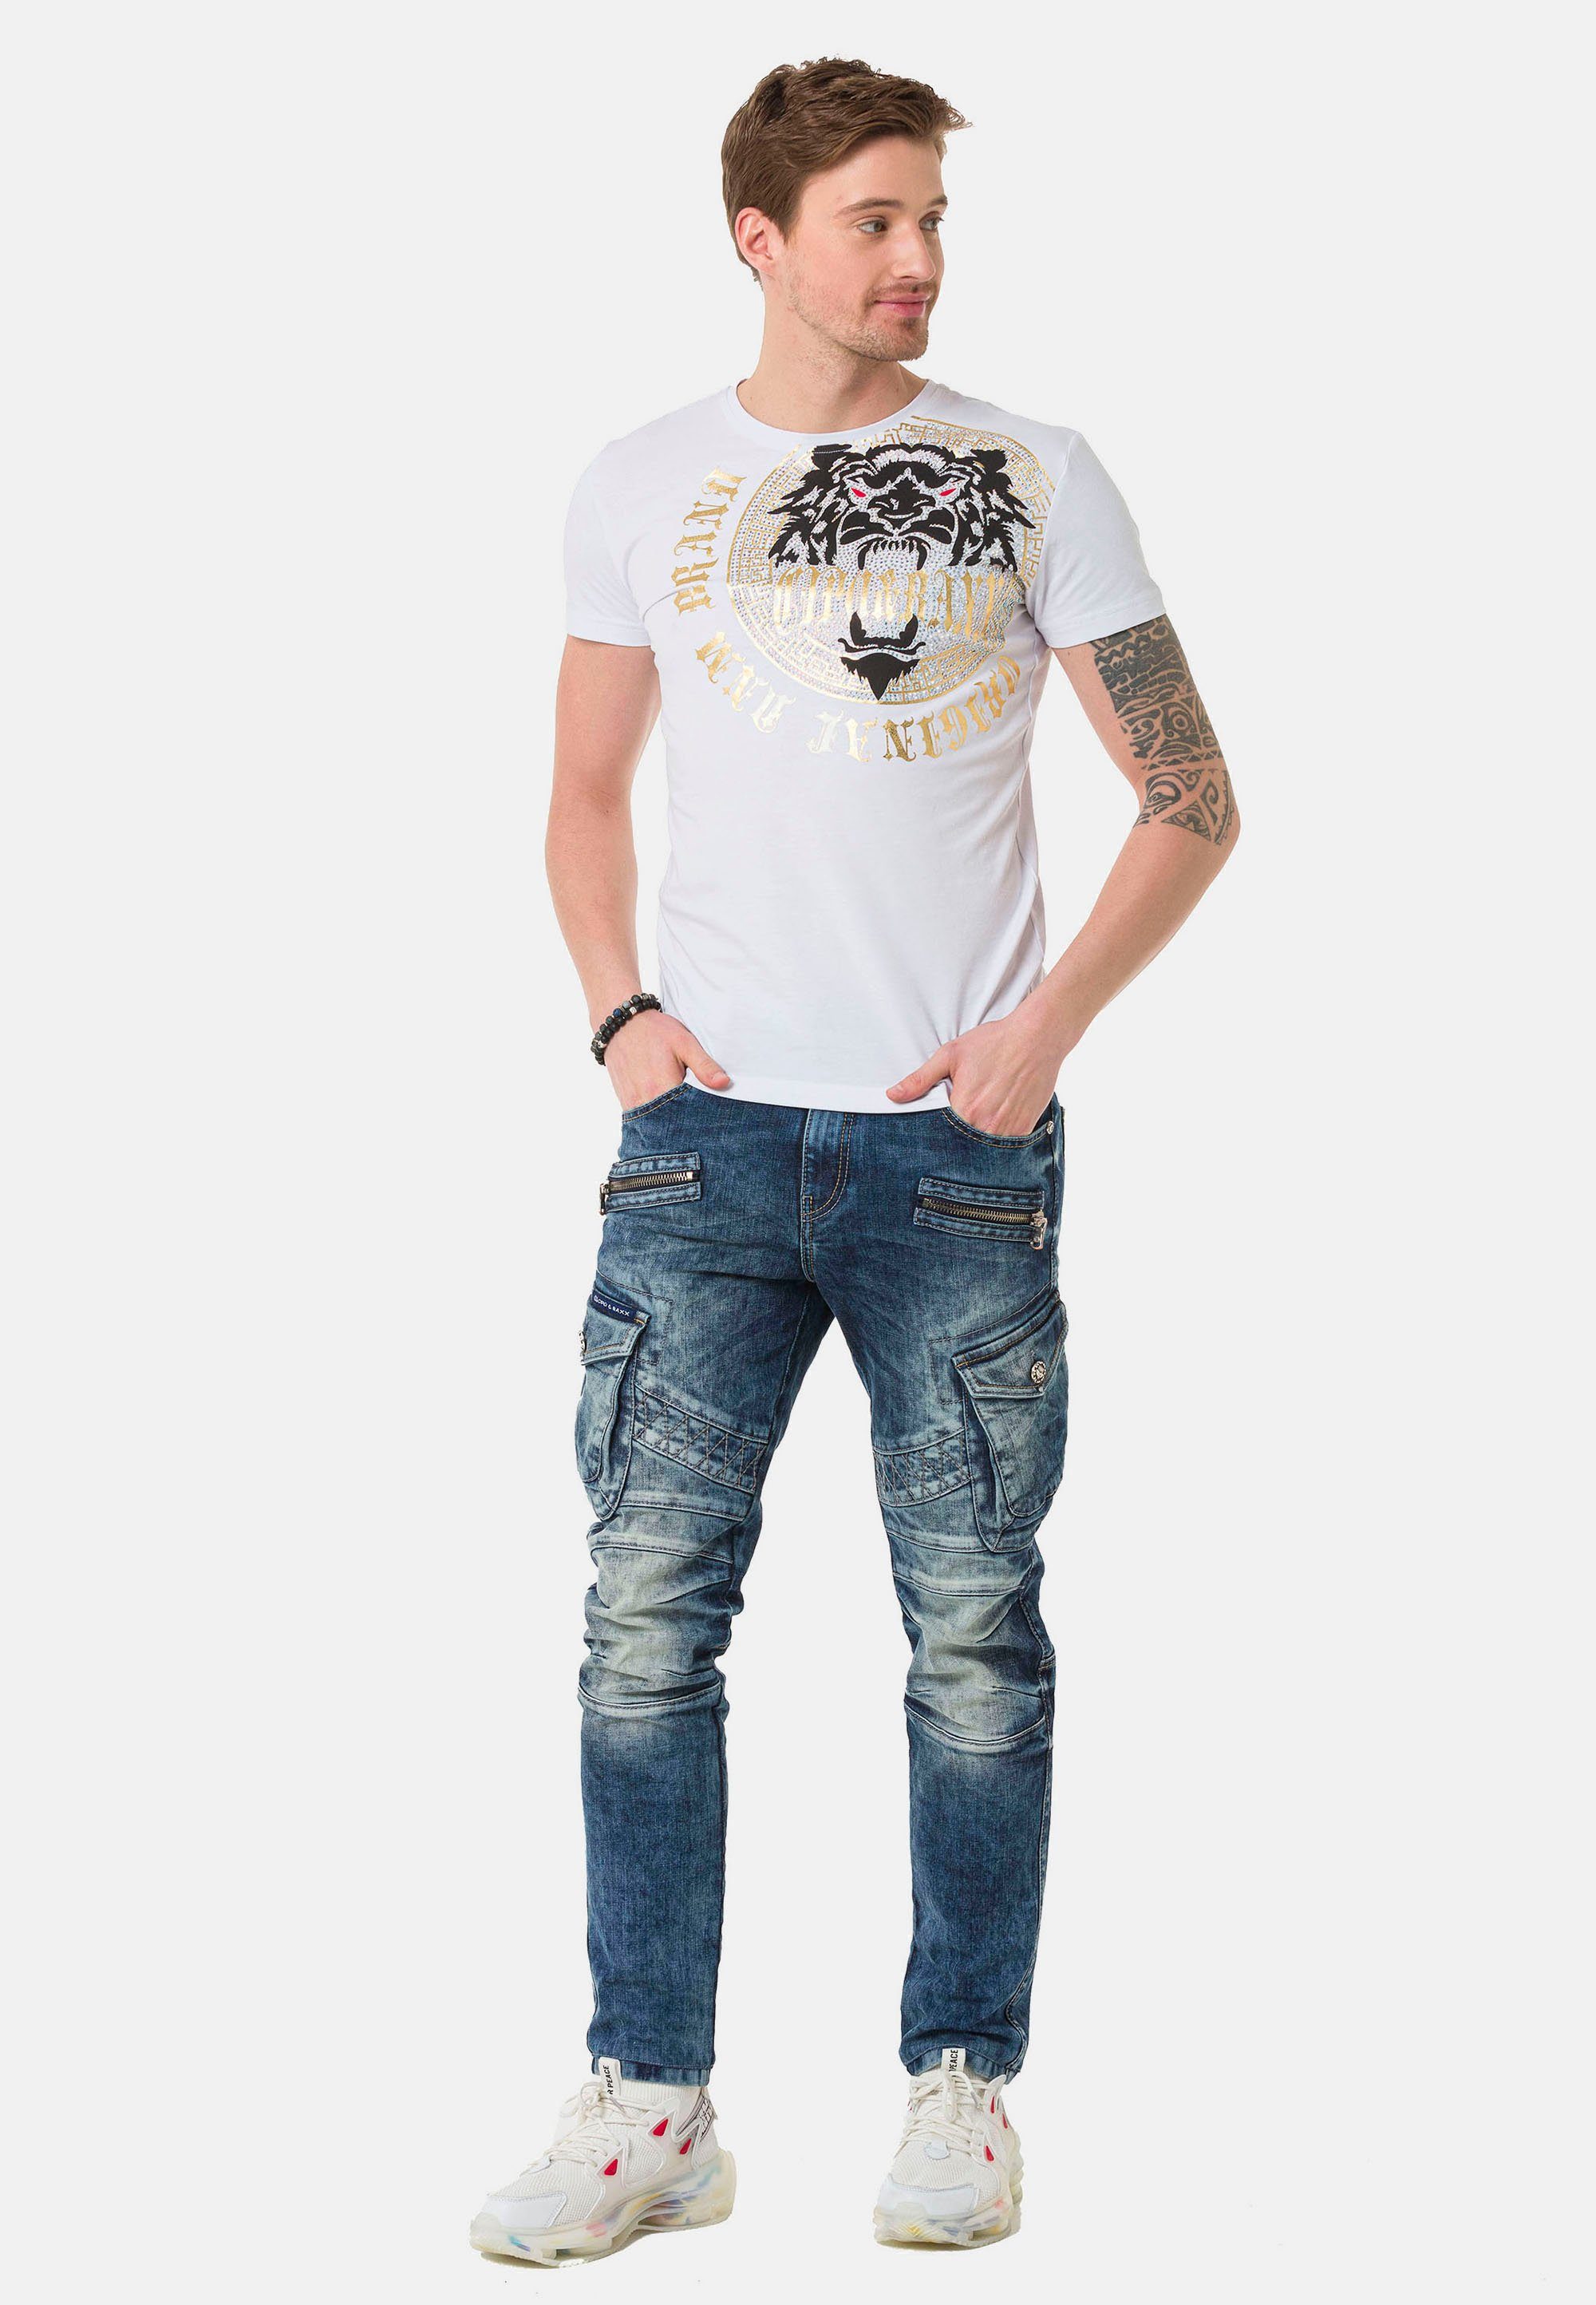 Cipo & Baxx Cargotaschen Straight-Jeans mit blau trendigen